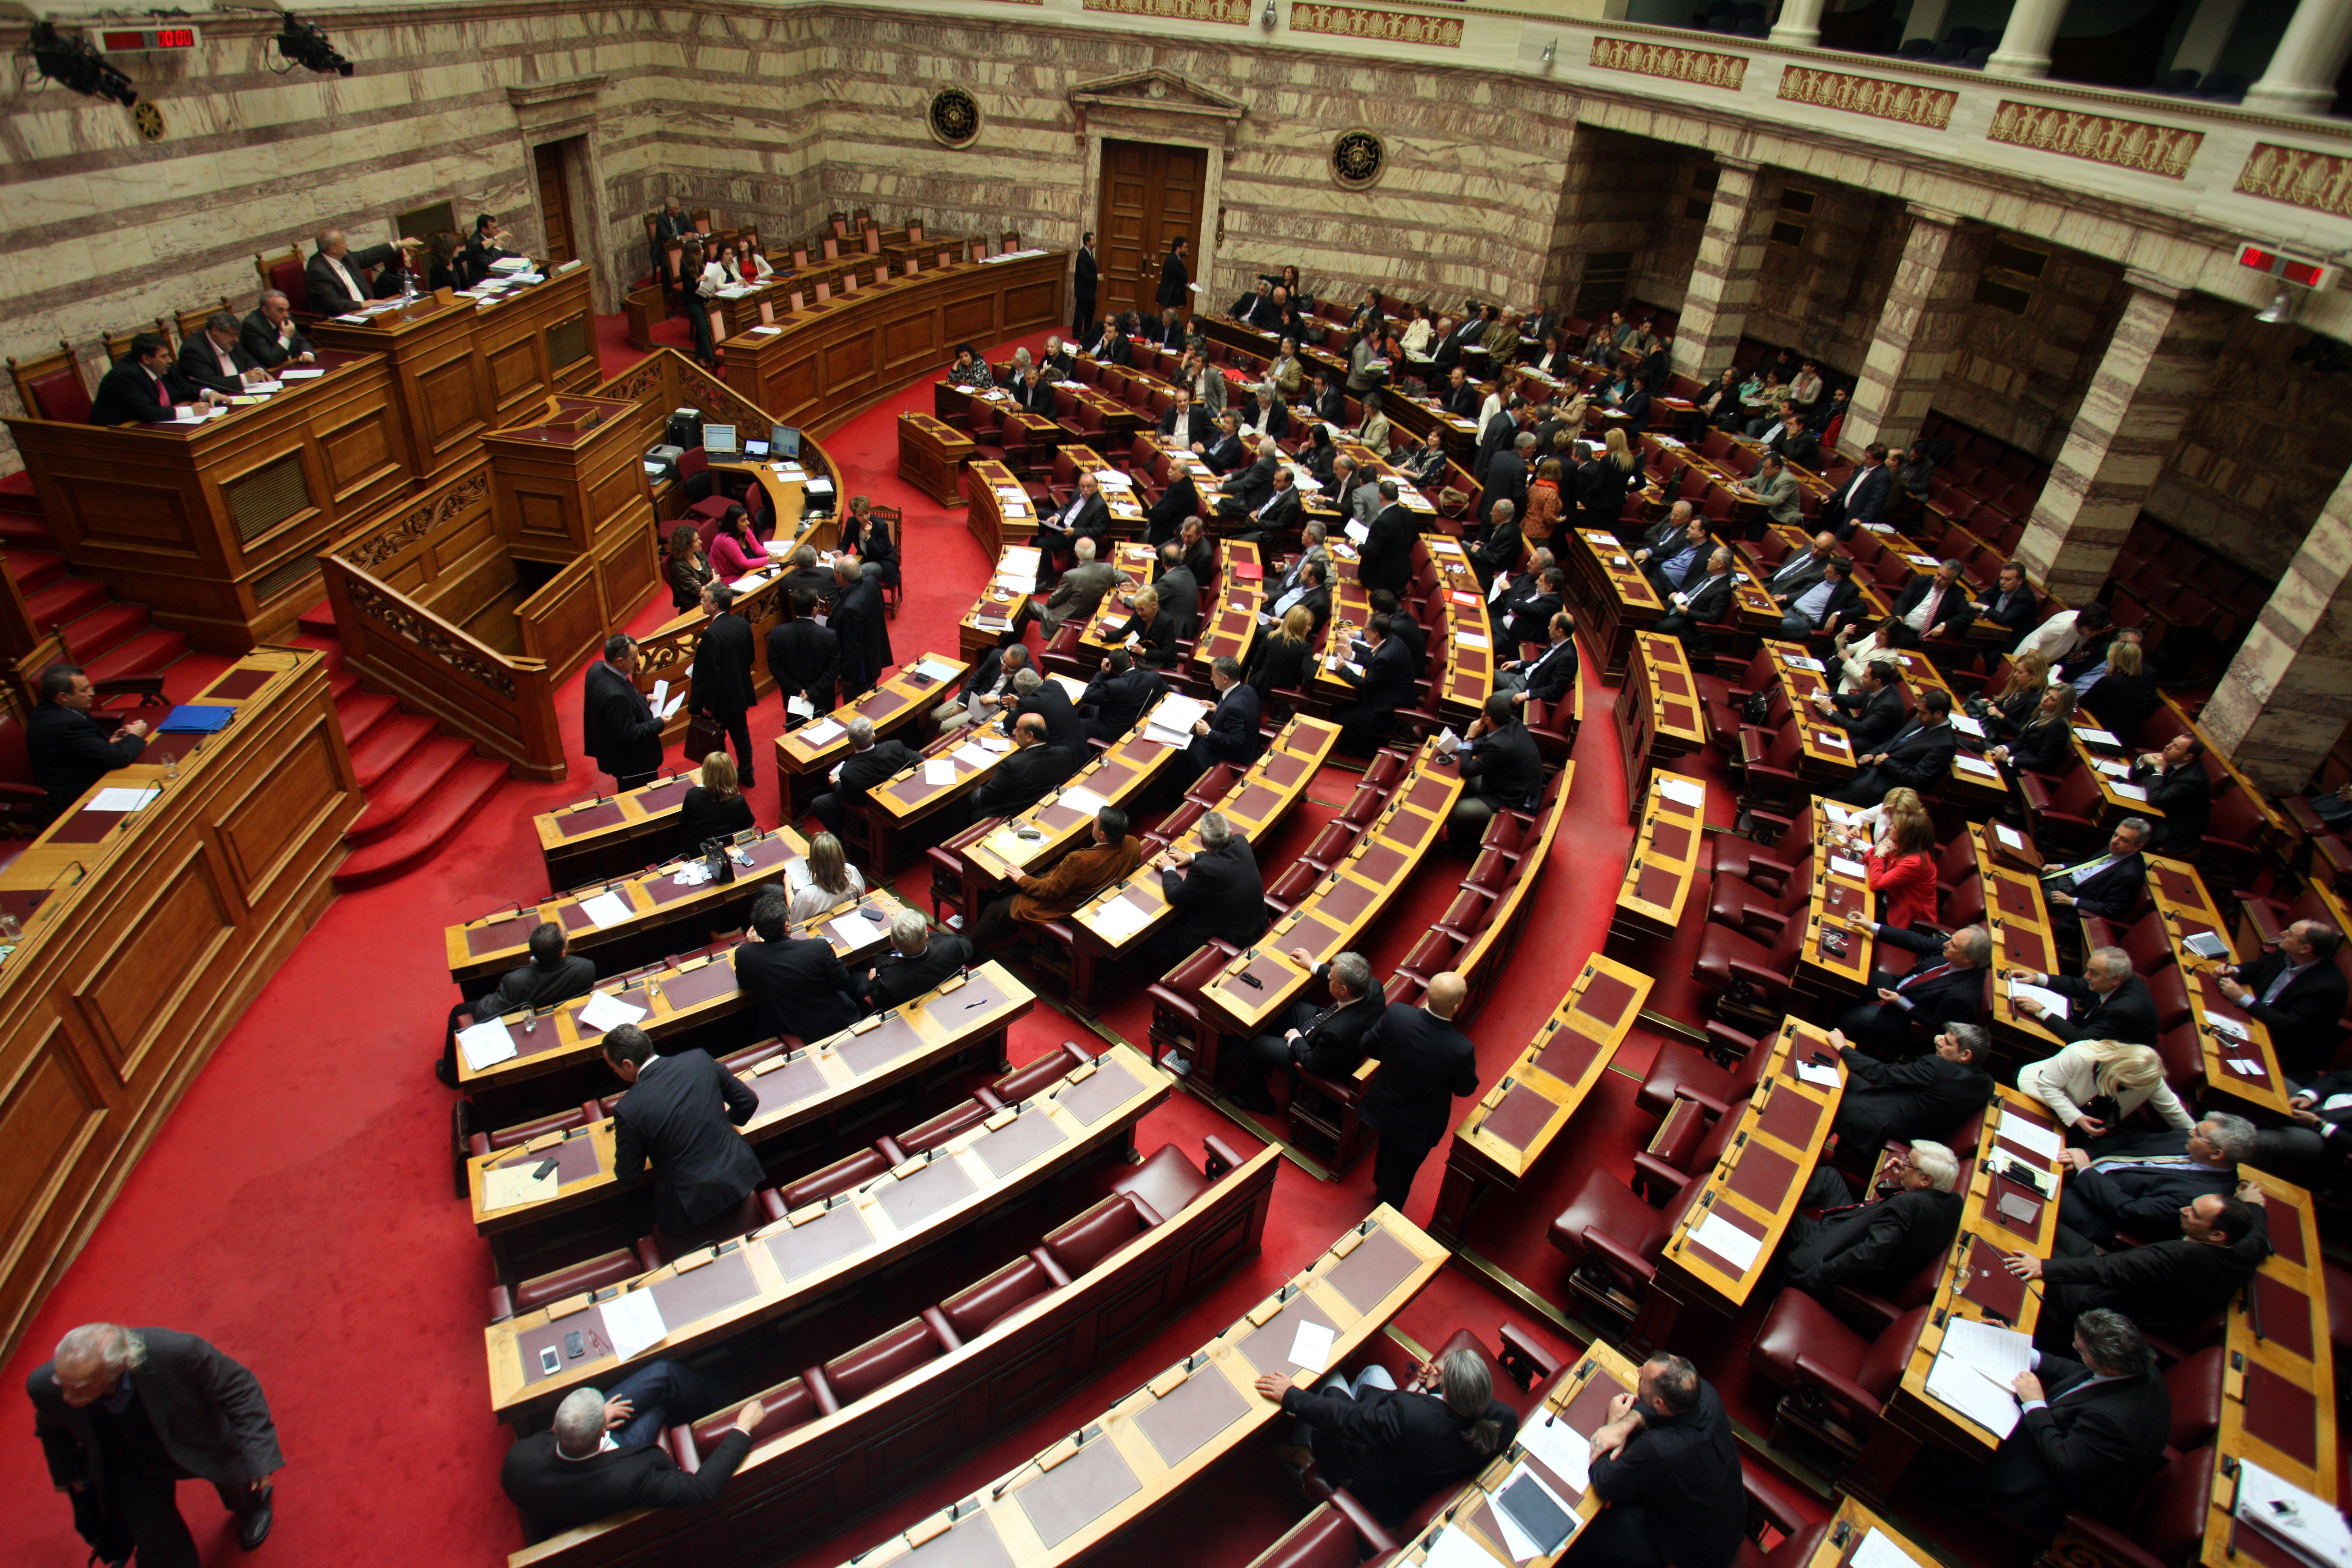 Αντάρτικο στην συγκυβέρνηση! – Καταψήφισαν ΠΑΣΟΚ και ΔΗΜΑΡ άρθρο νομοσχεδίου